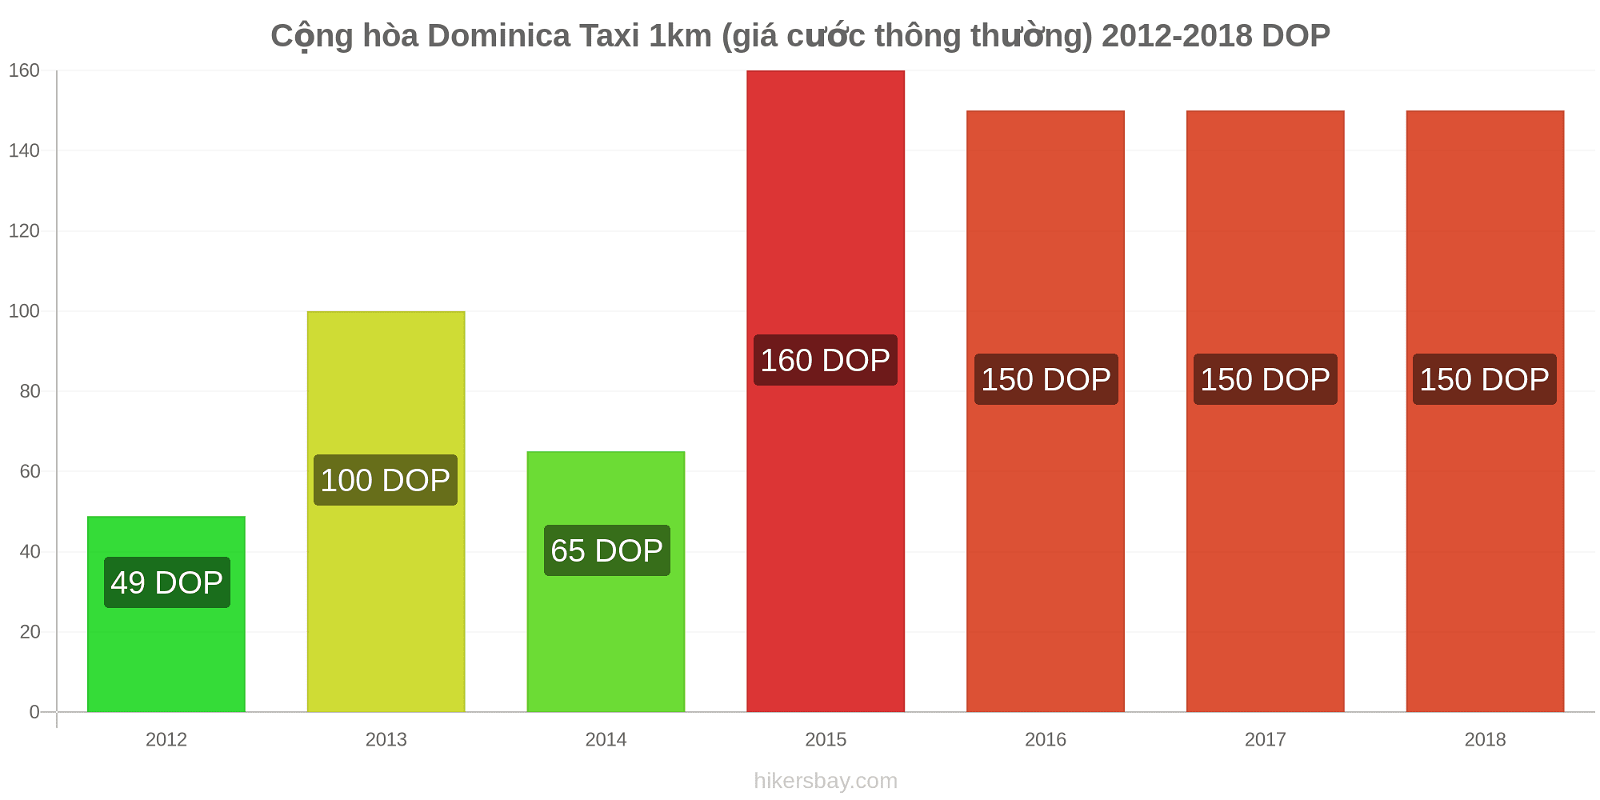 Cộng hòa Dominica thay đổi giá cả Taxi 1km (giá cước thông thường) hikersbay.com